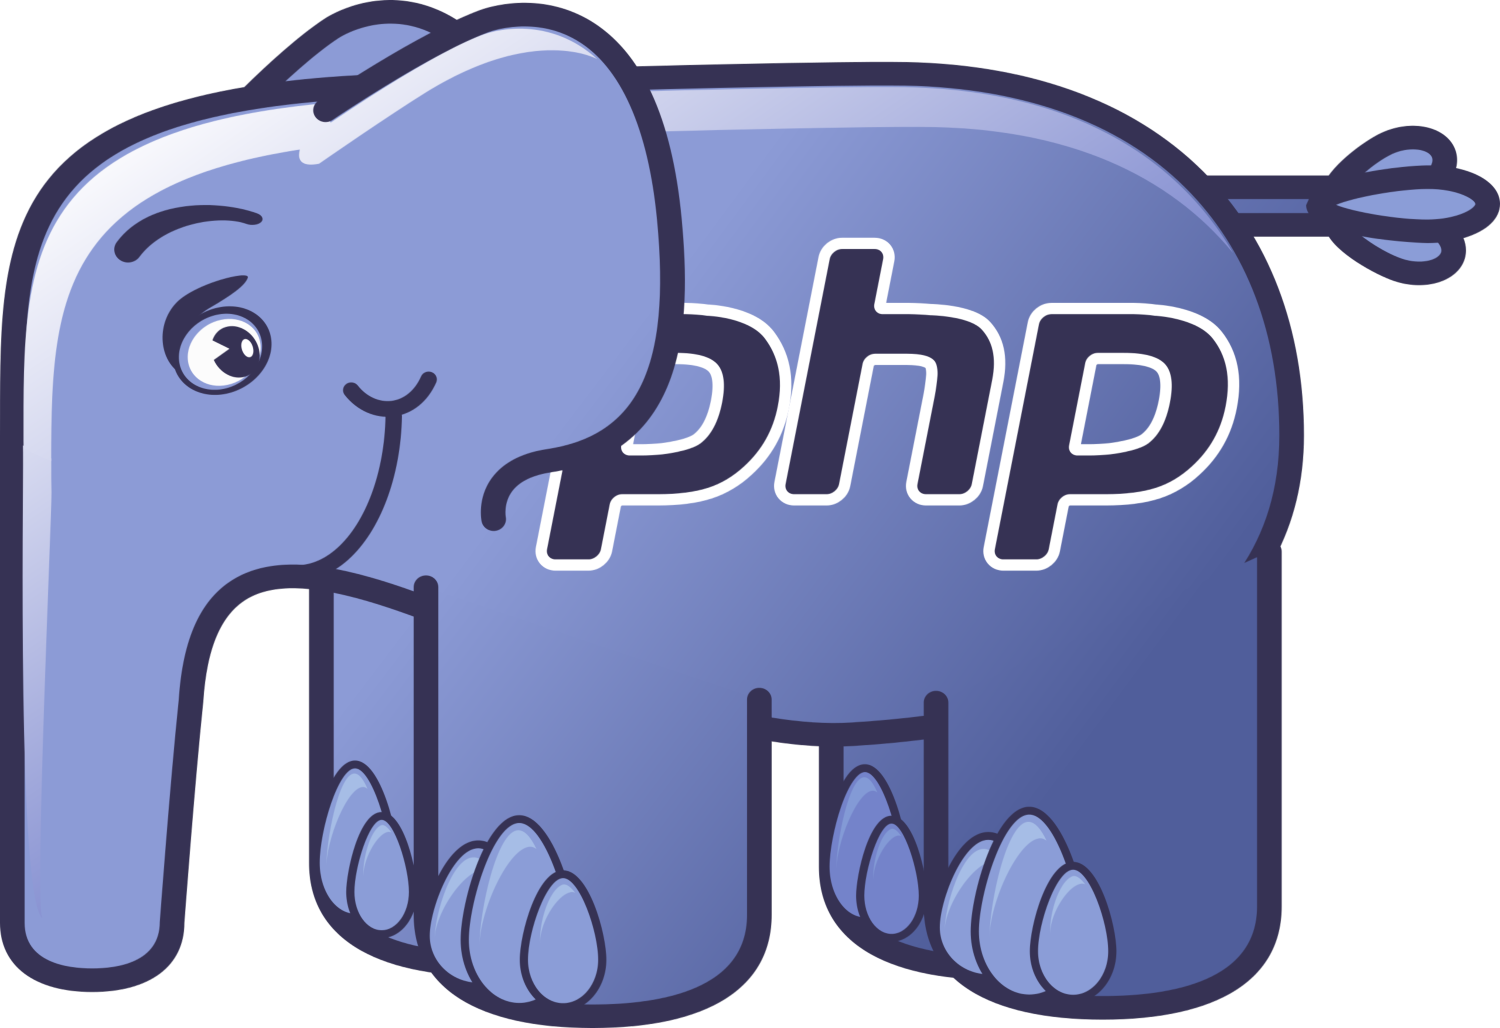 язык программирования php для создания сайтов